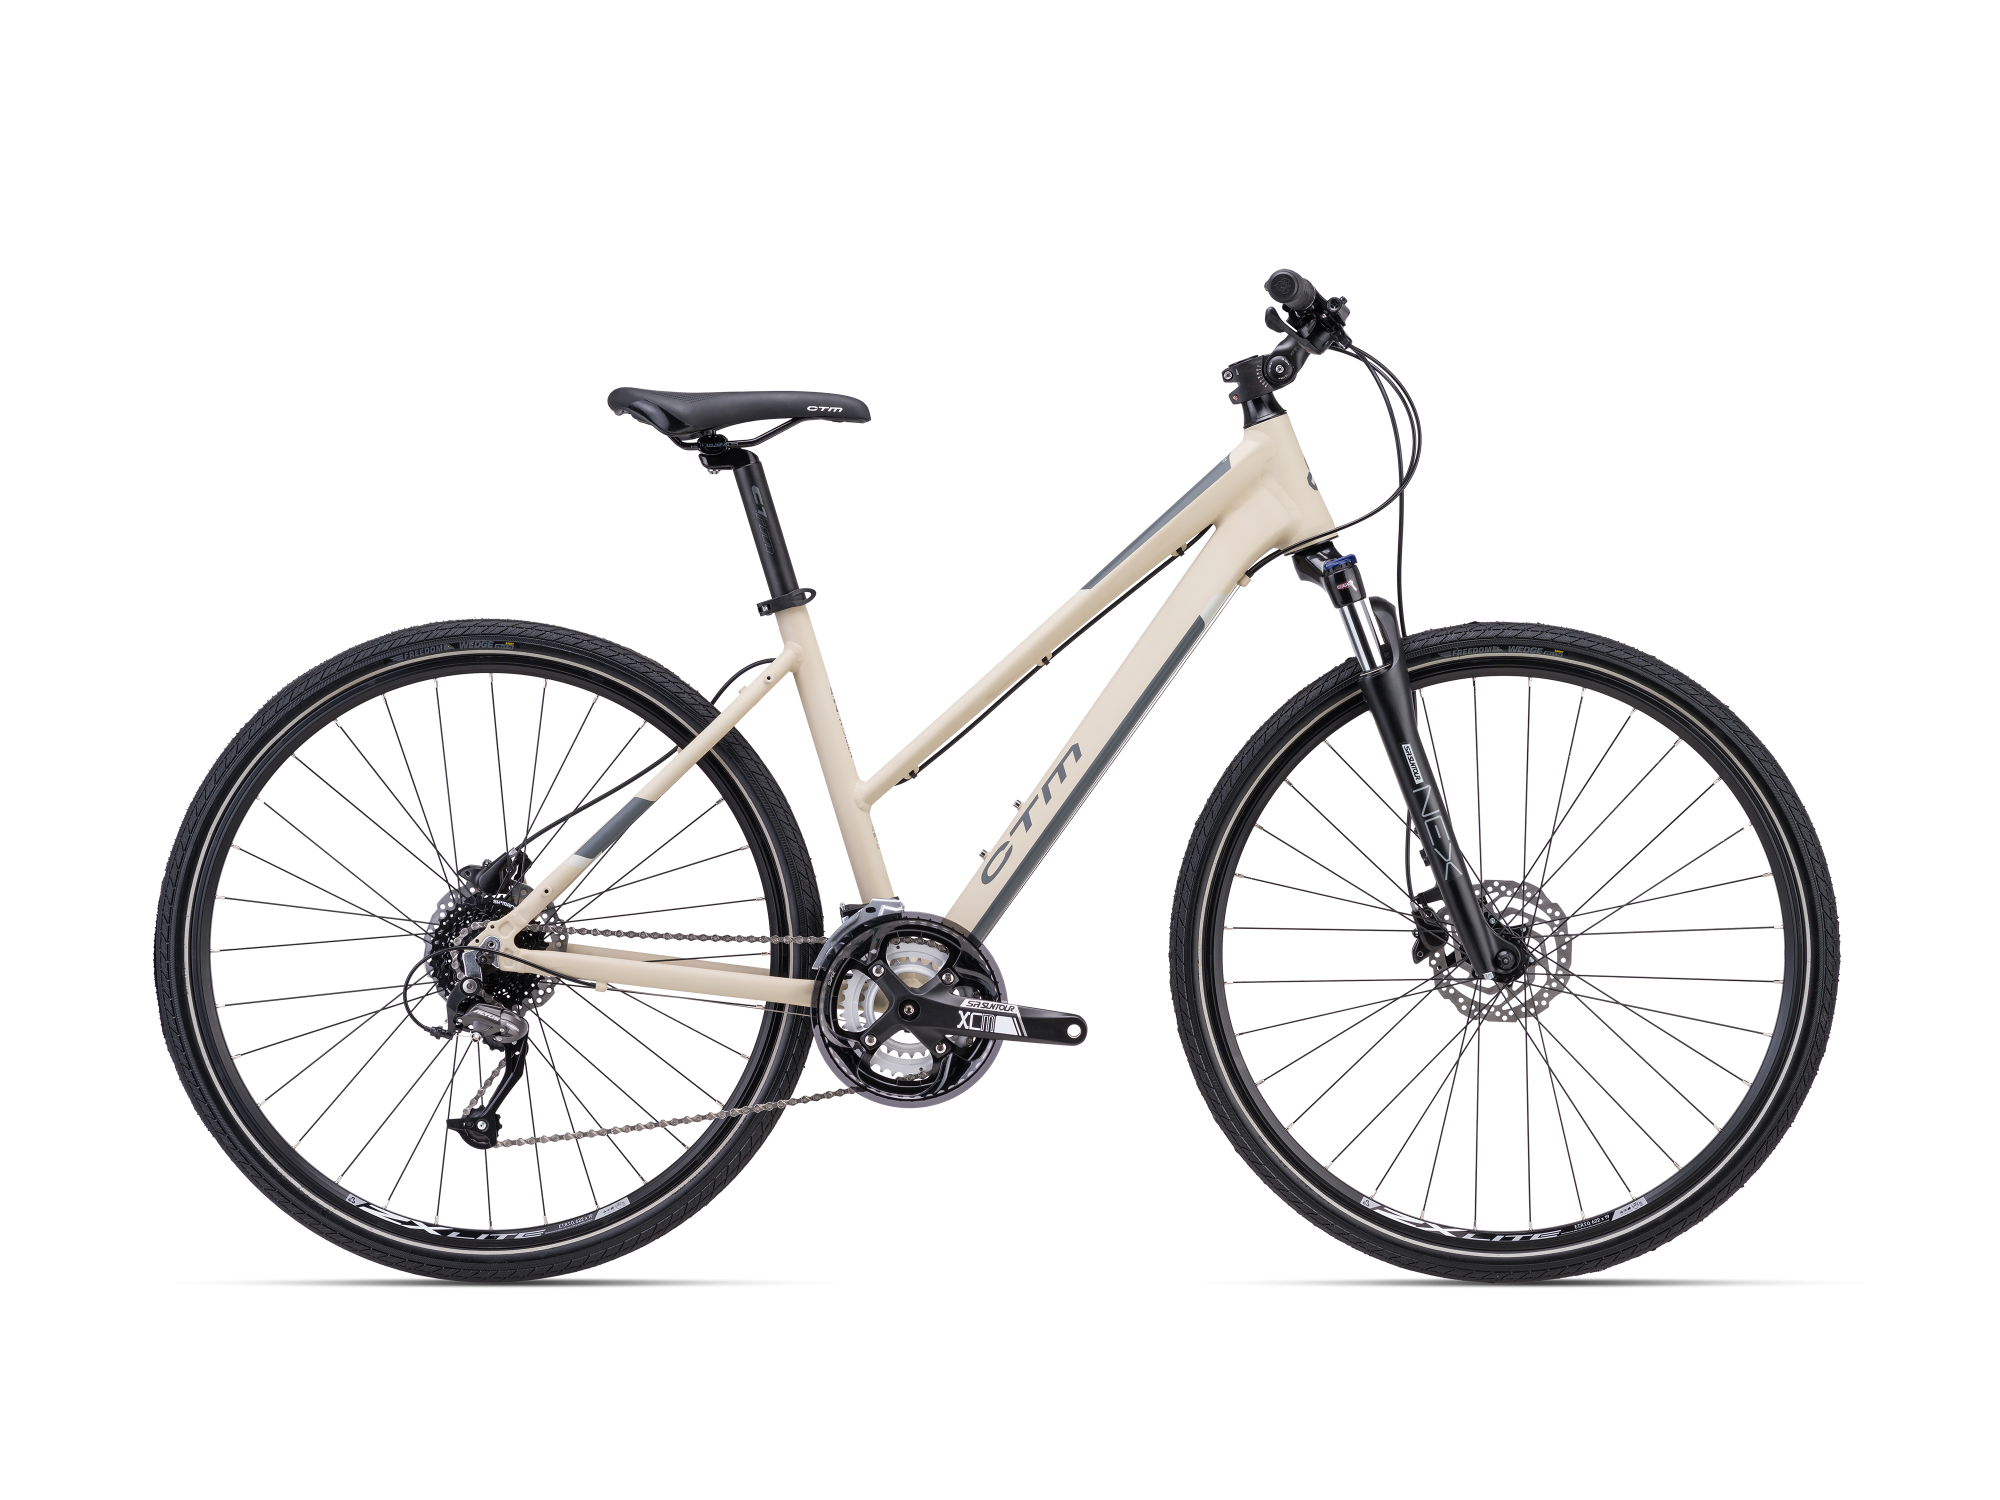 Ženski cross bicikl CTM Bora 2.0 smeđe boje